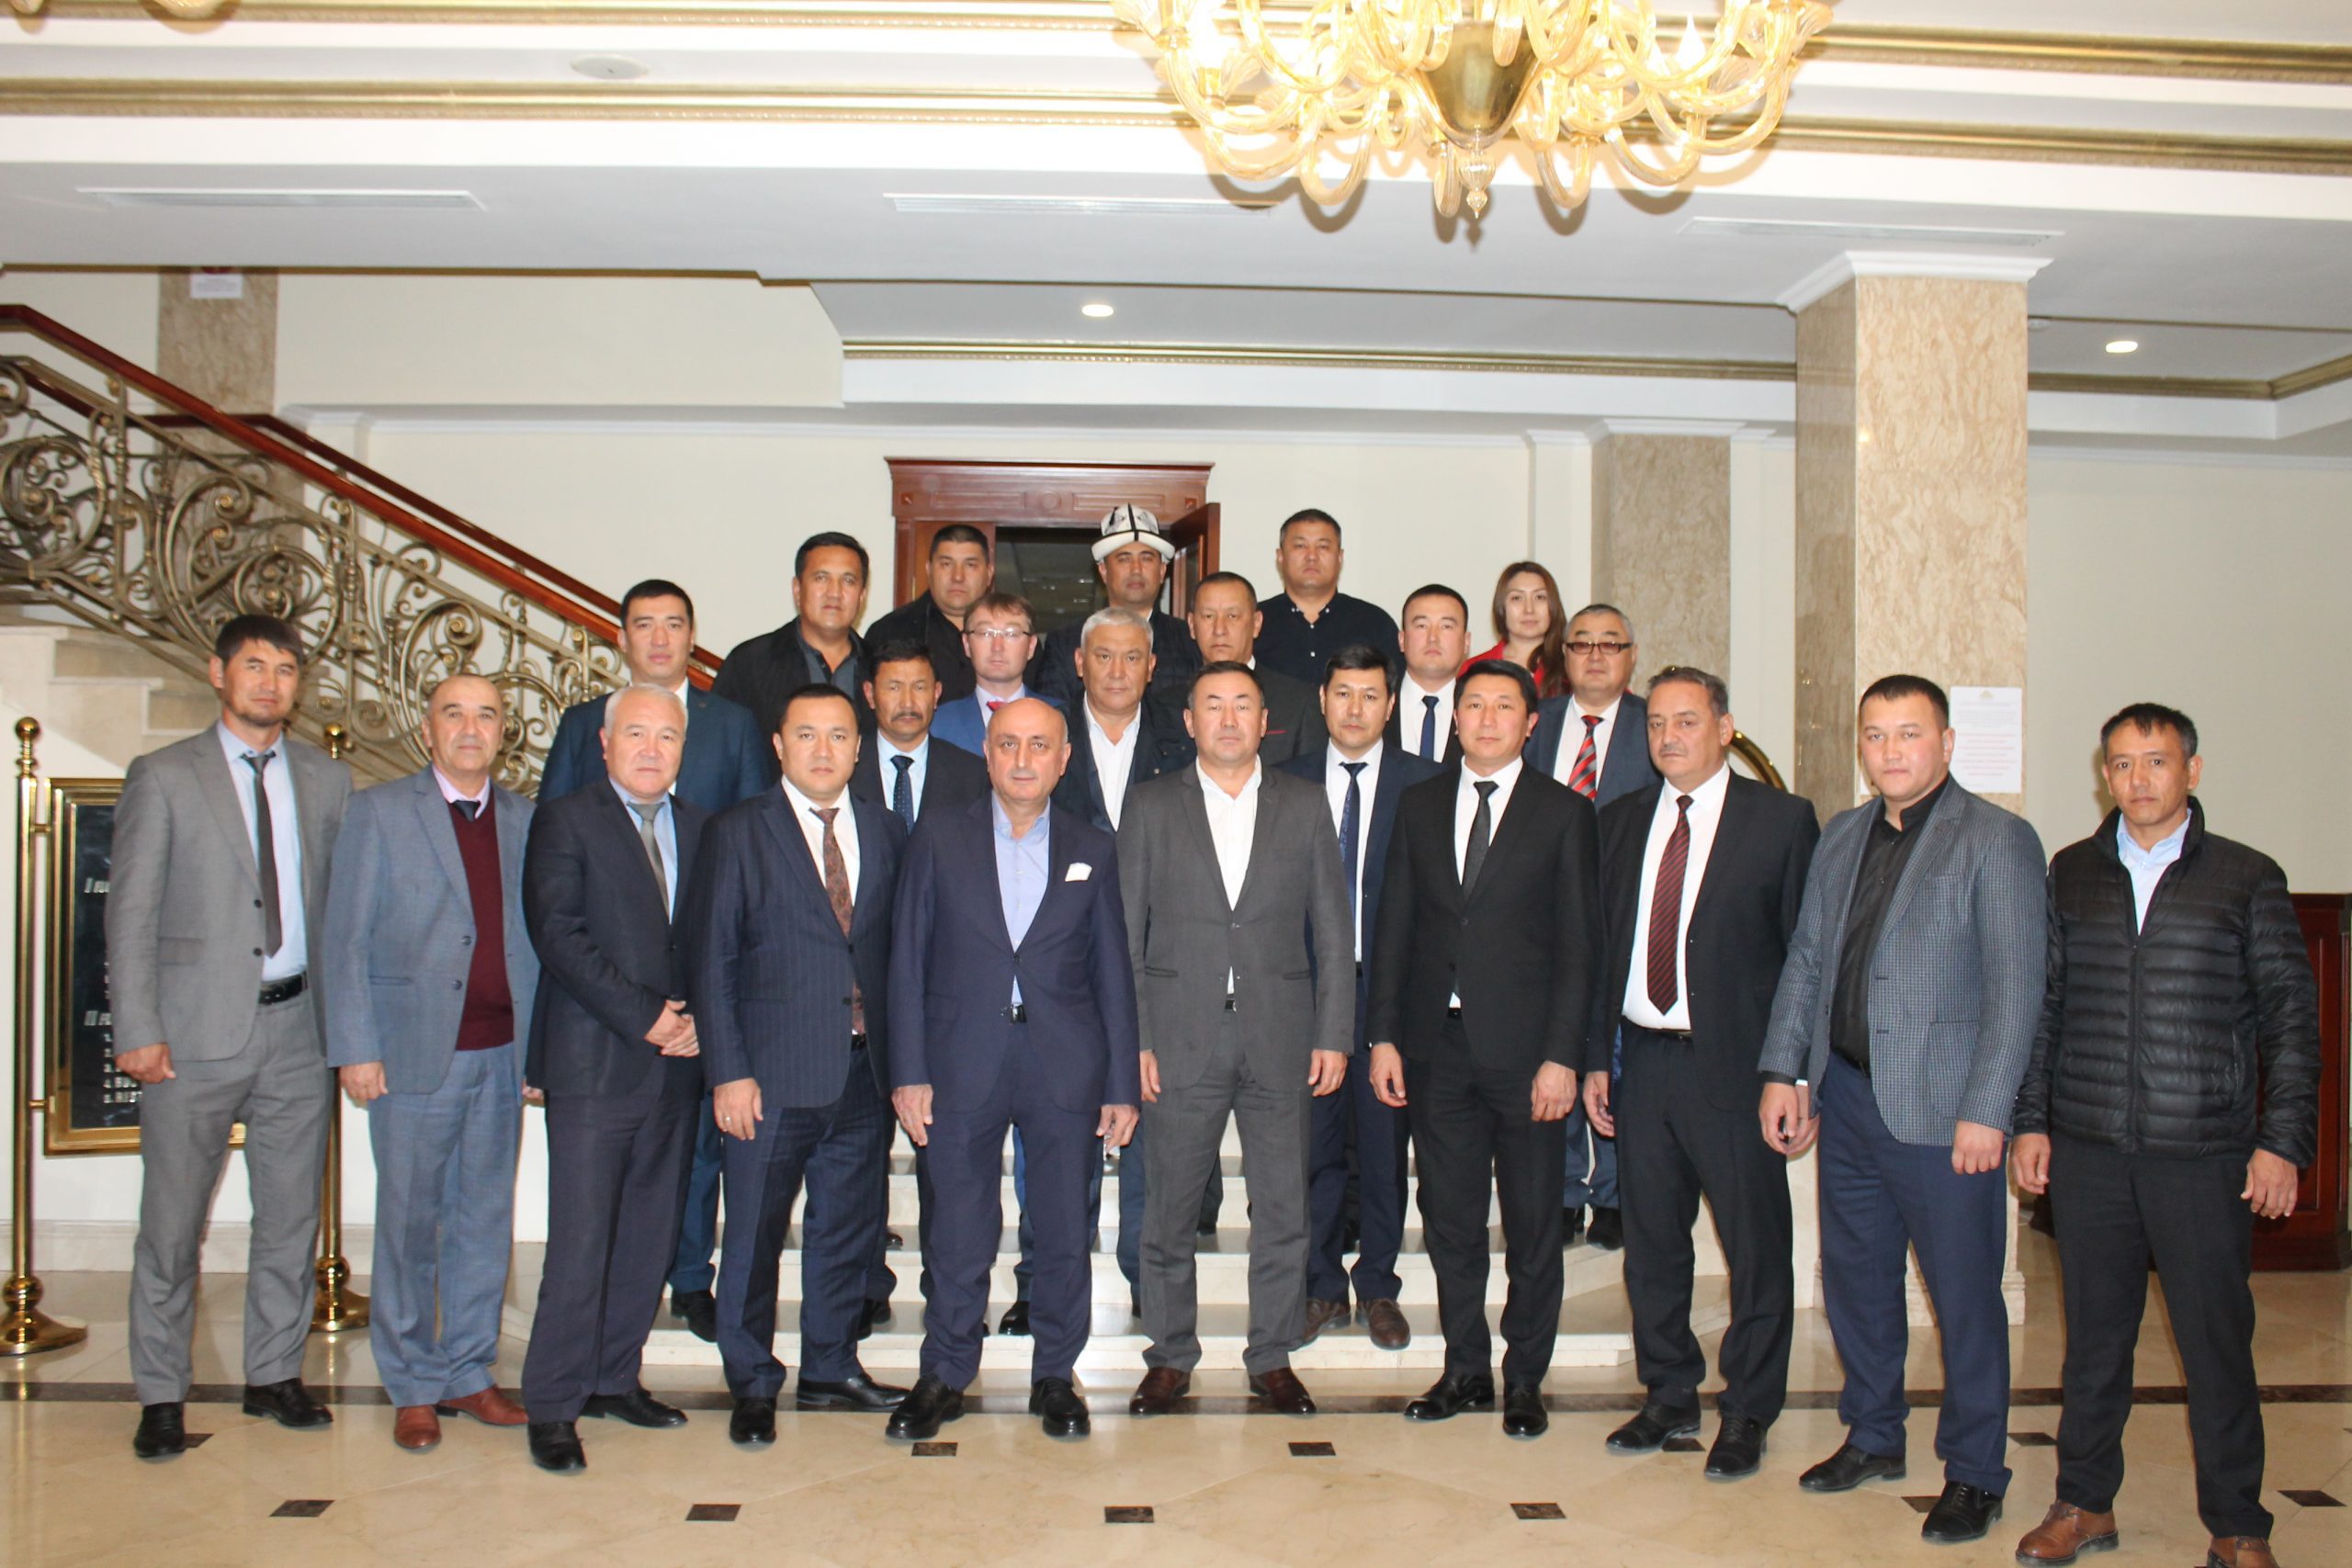 TDBB Kırgızistan Üye Belediyeler Koordinasyon Toplantısı Bişkek’te Yapıldı. TDBB /TURKISHFORUM - ABDULLAH TÜRER YENER - kirgizistanturkbelediyeler